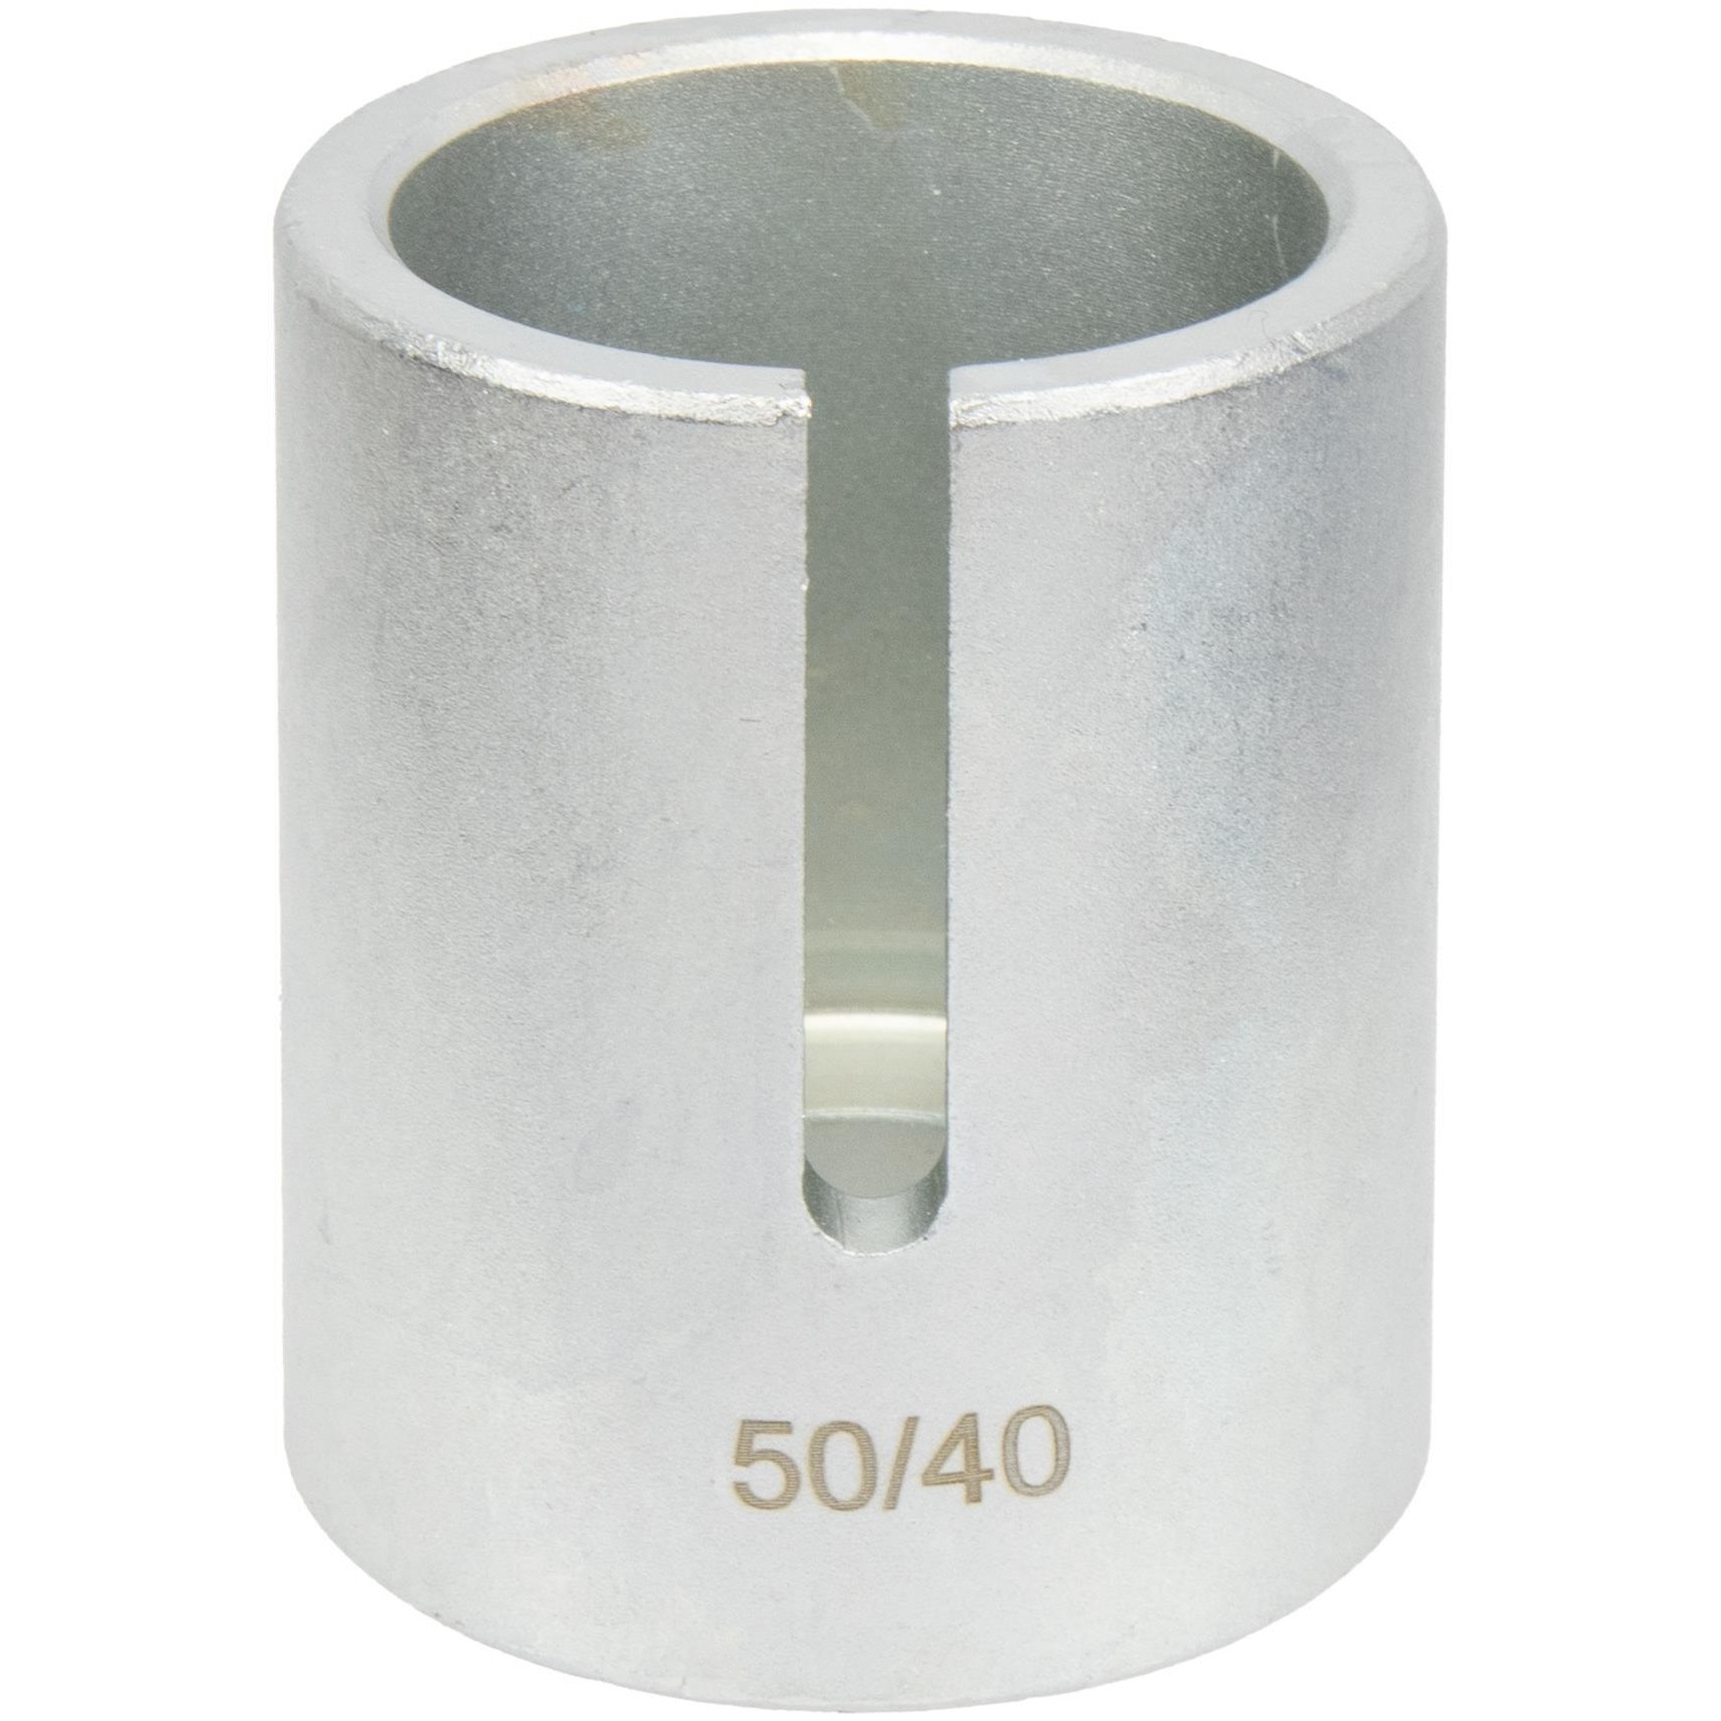 Puzdro tlačné Ø 40 / 50 mm, pre sadu na ložiská REPTOOLS 117908, STAHLMAXX 117908-40/50